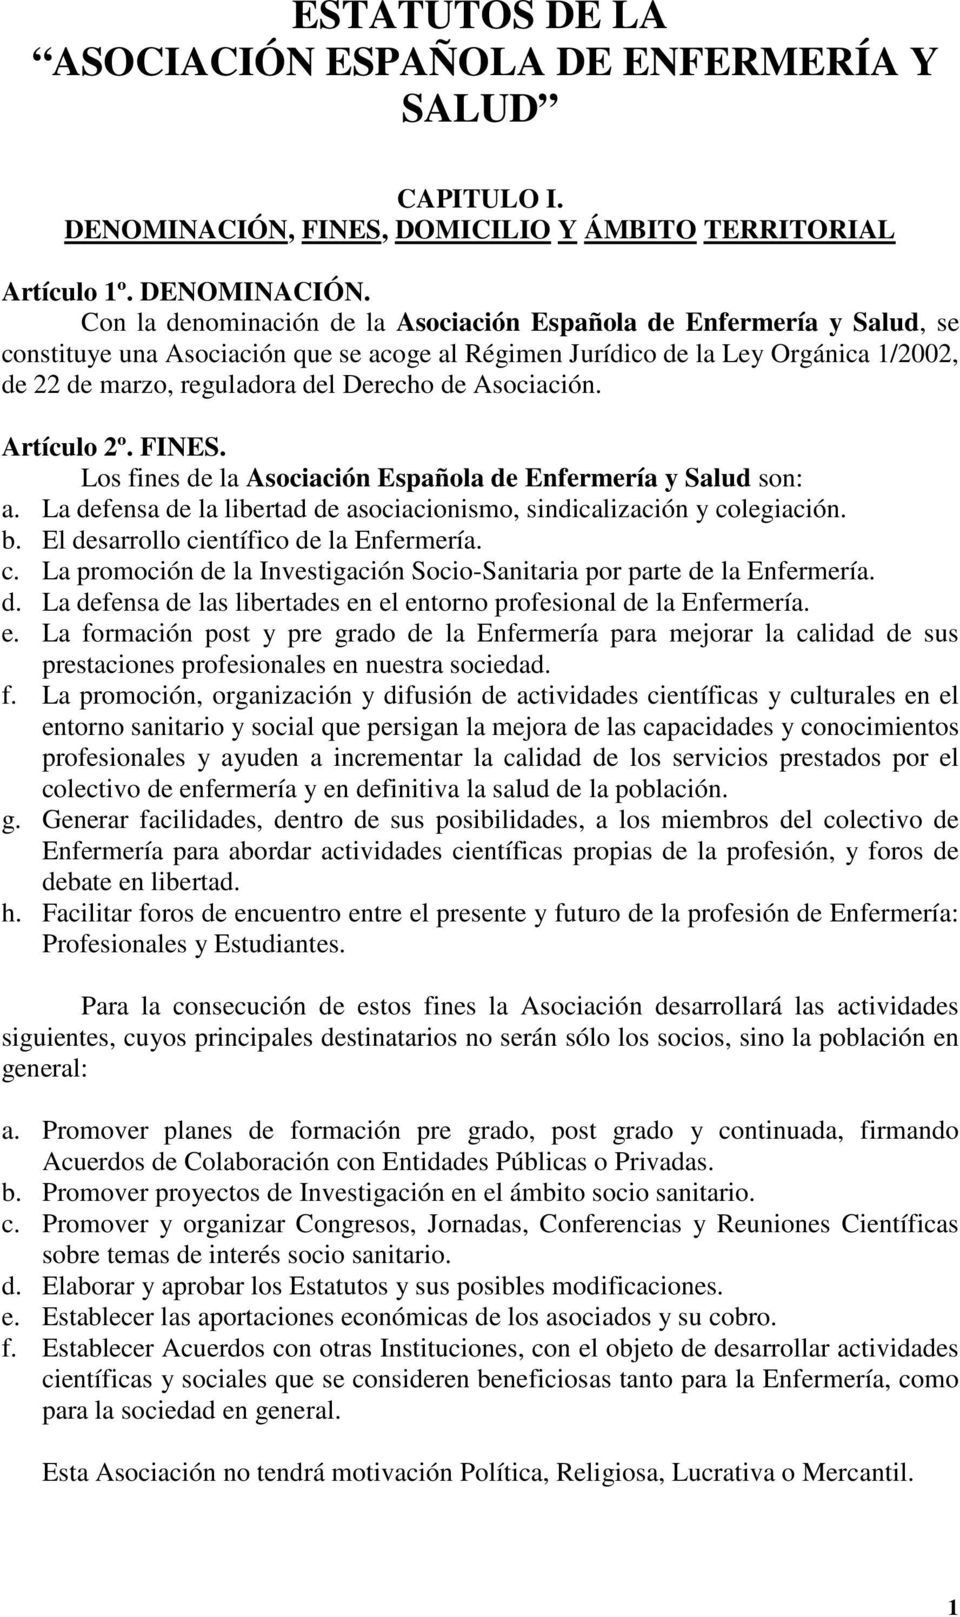 Con la denominación de la Asociación Española de Enfermería y Salud, se constituye una Asociación que se acoge al Régimen Jurídico de la Ley Orgánica 1/2002, de 22 de marzo, reguladora del Derecho de